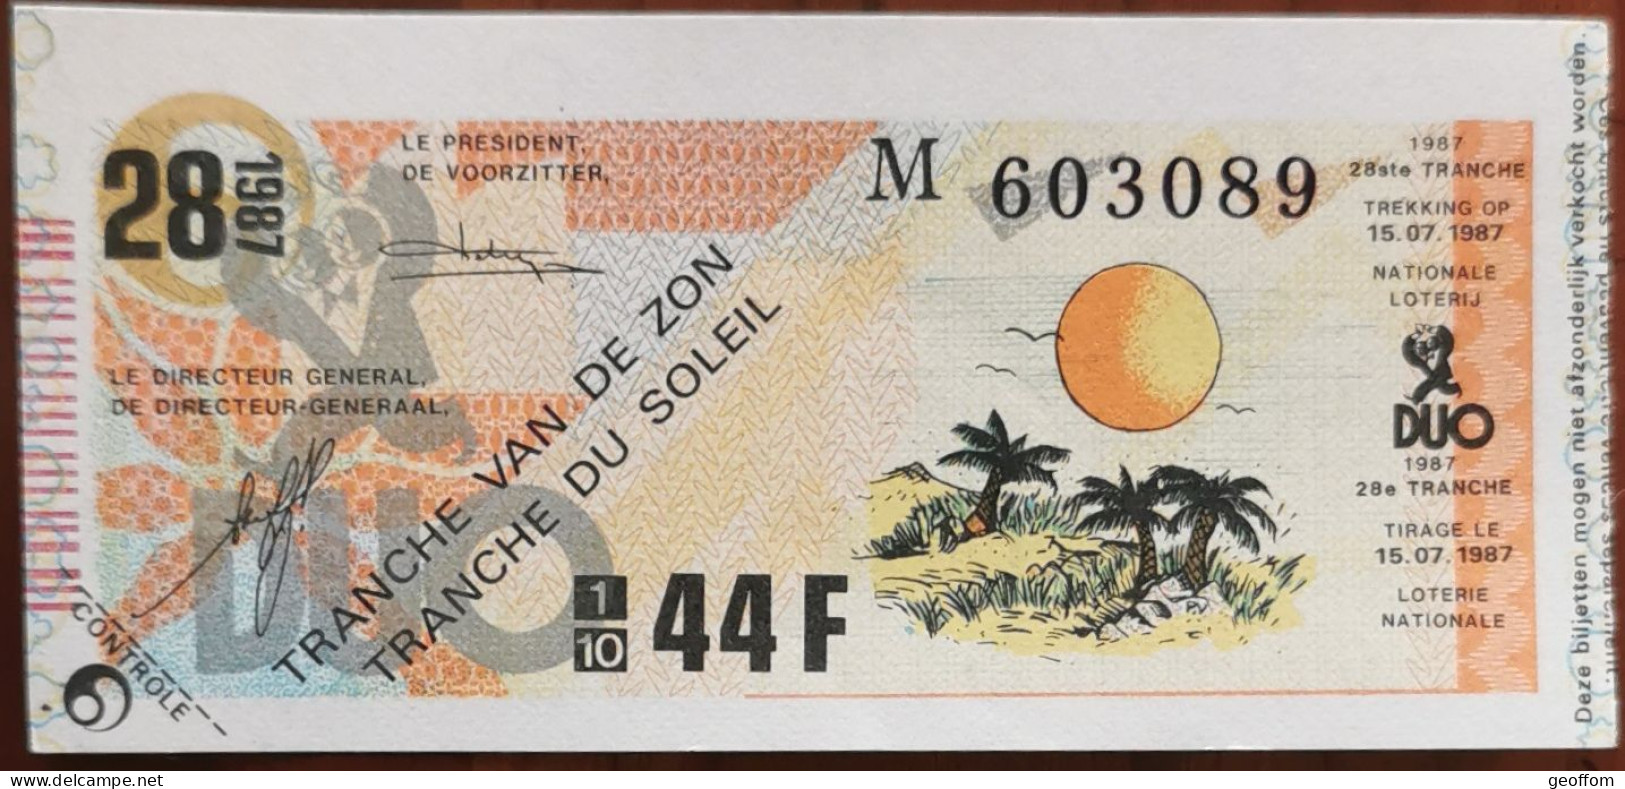 Billet De Loterie Nationale Belgique 1987 28e Tranche Du Soleil - 15-7-1987 - Billetes De Lotería